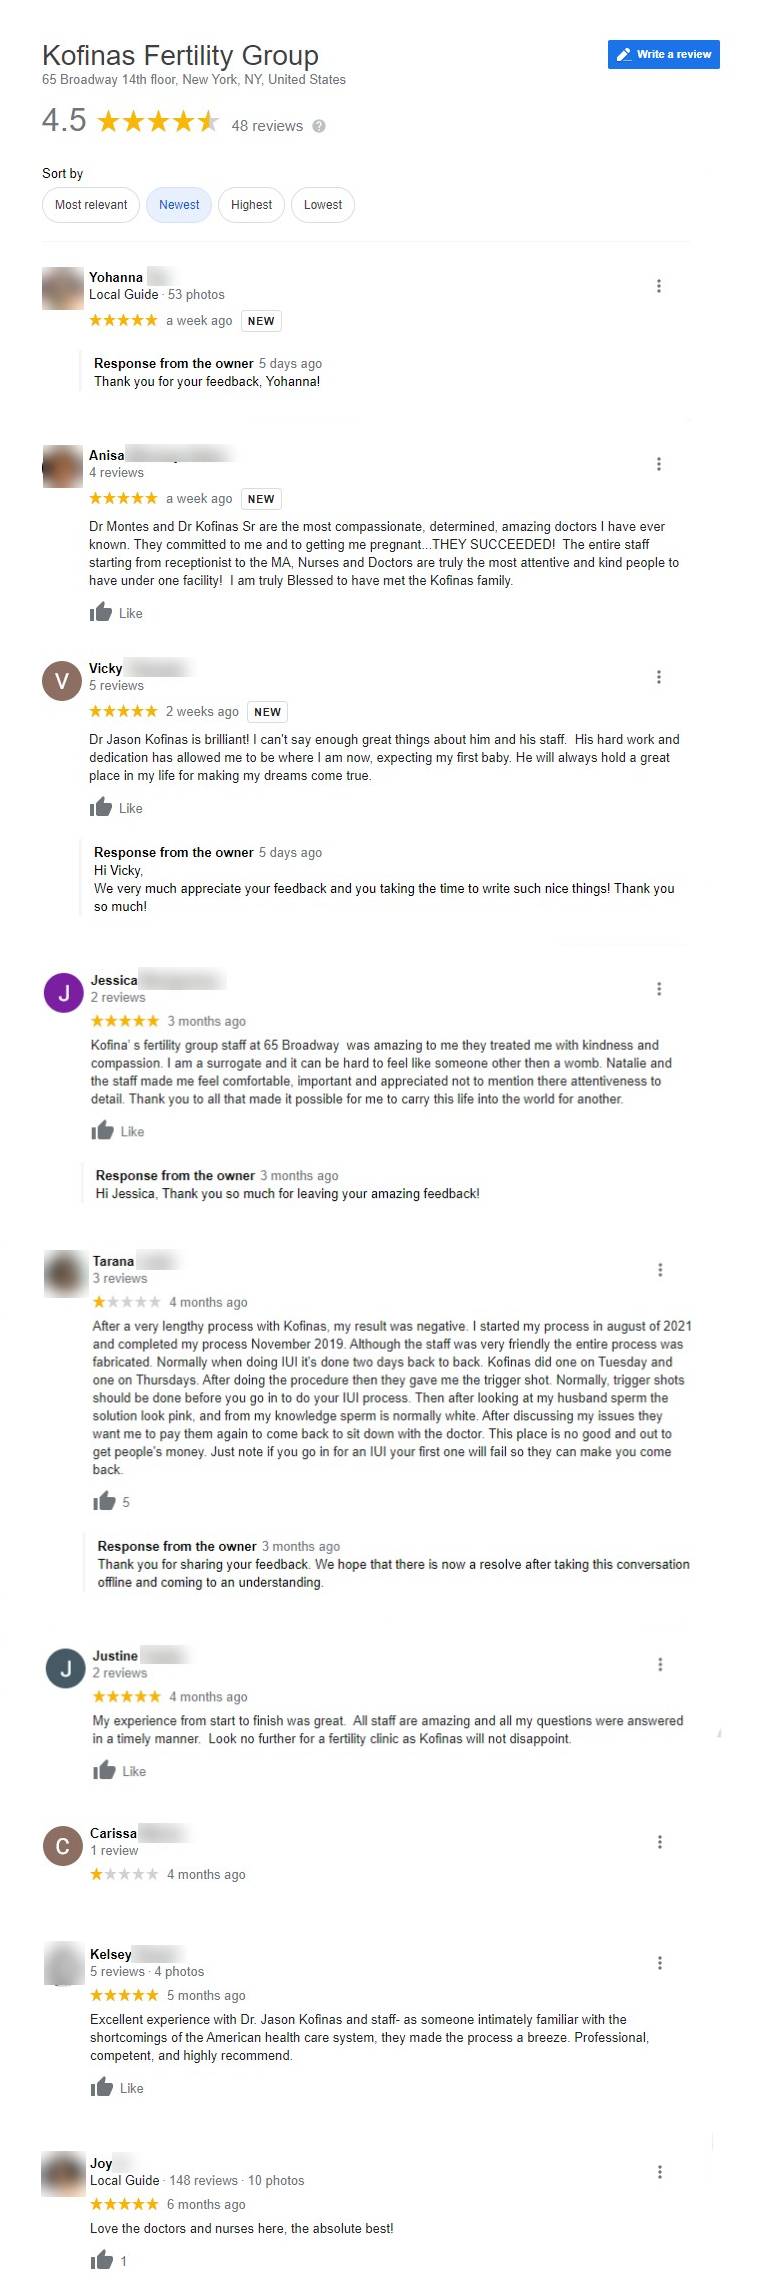 Reviews on kofinas